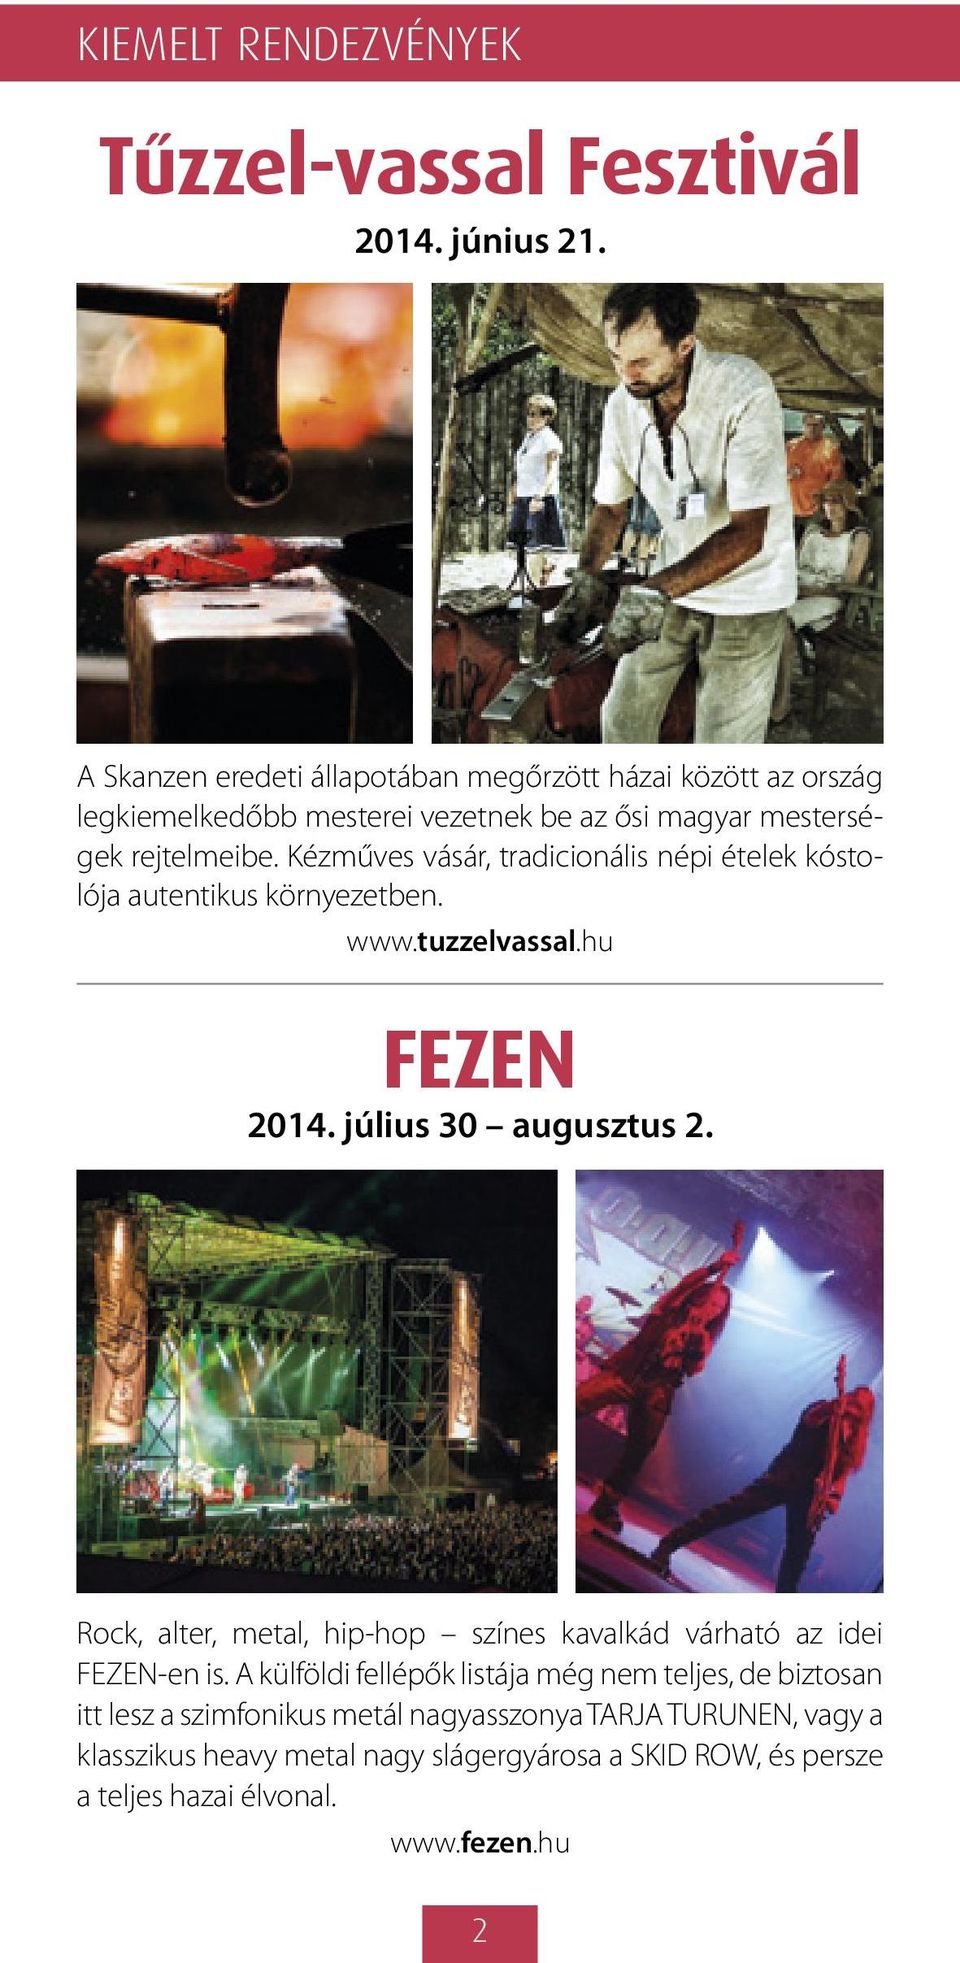 Kézműves vásár, tradicionális népi ételek kóstolója autentikus környezetben. www.tuzzelvassal.hu FEZEN 2014. július 30 augusztus 2.